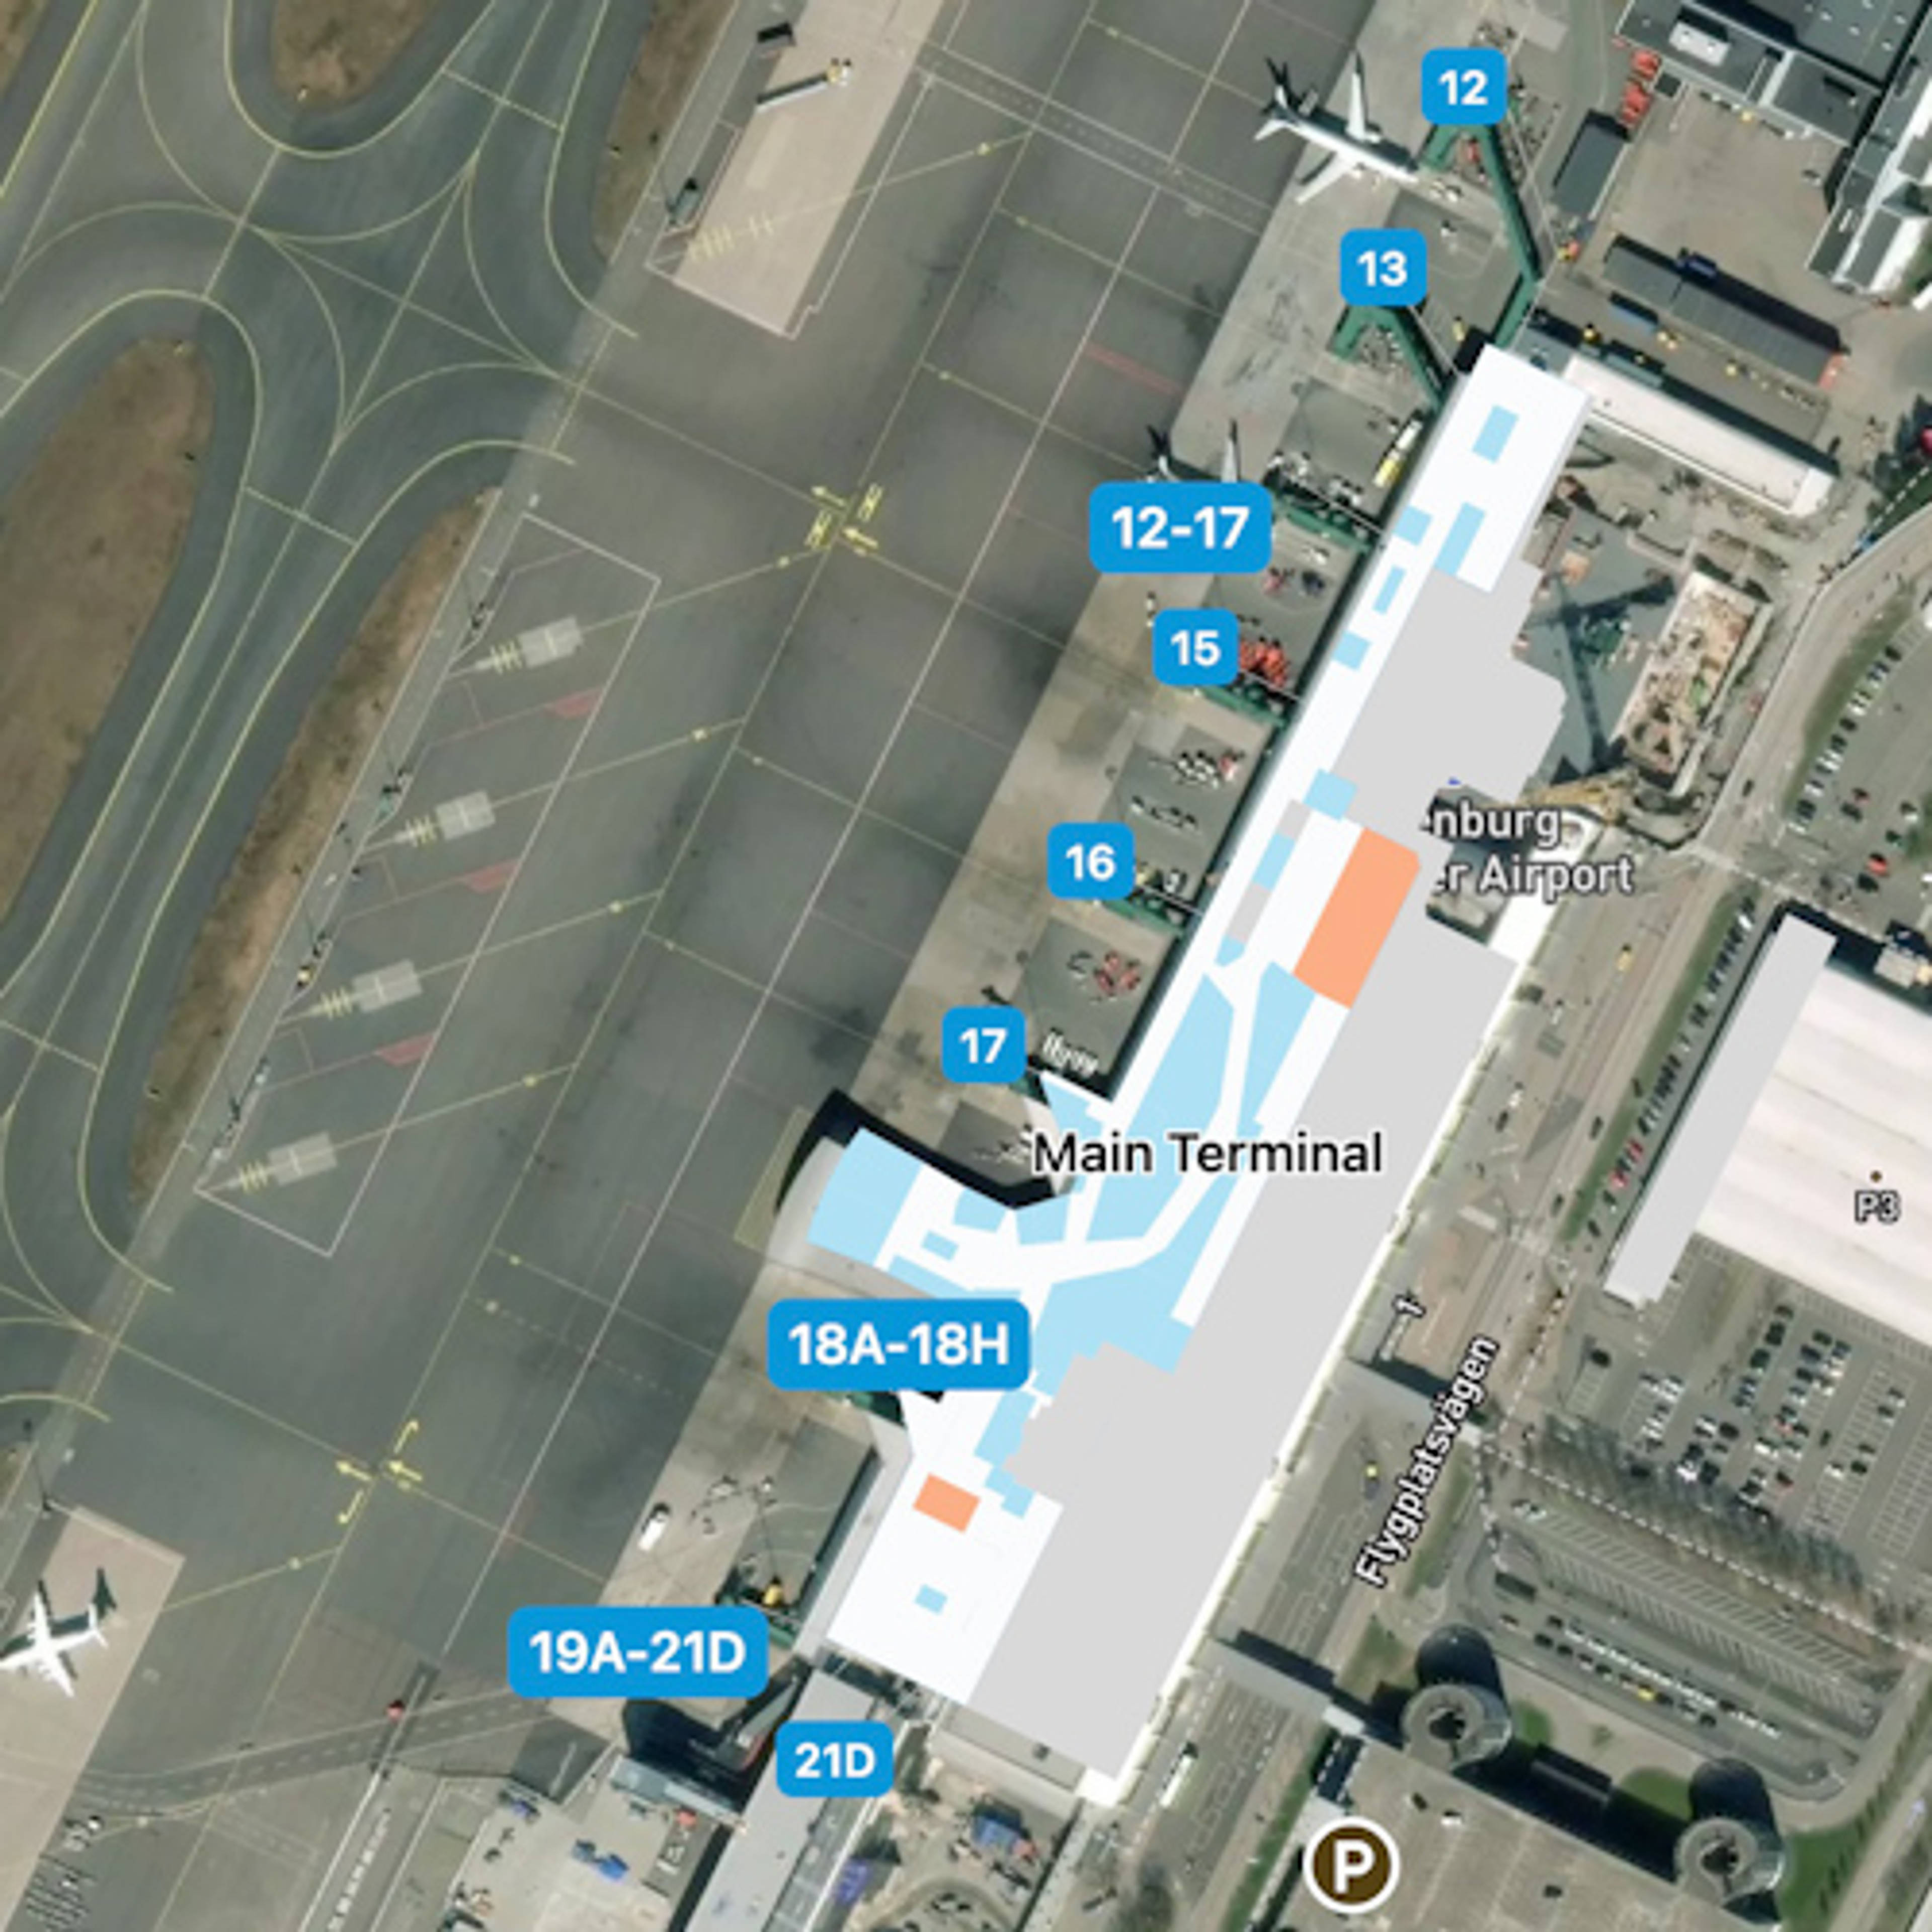 Goteborg-Landvetter Airport GOT Terminal Overview Map